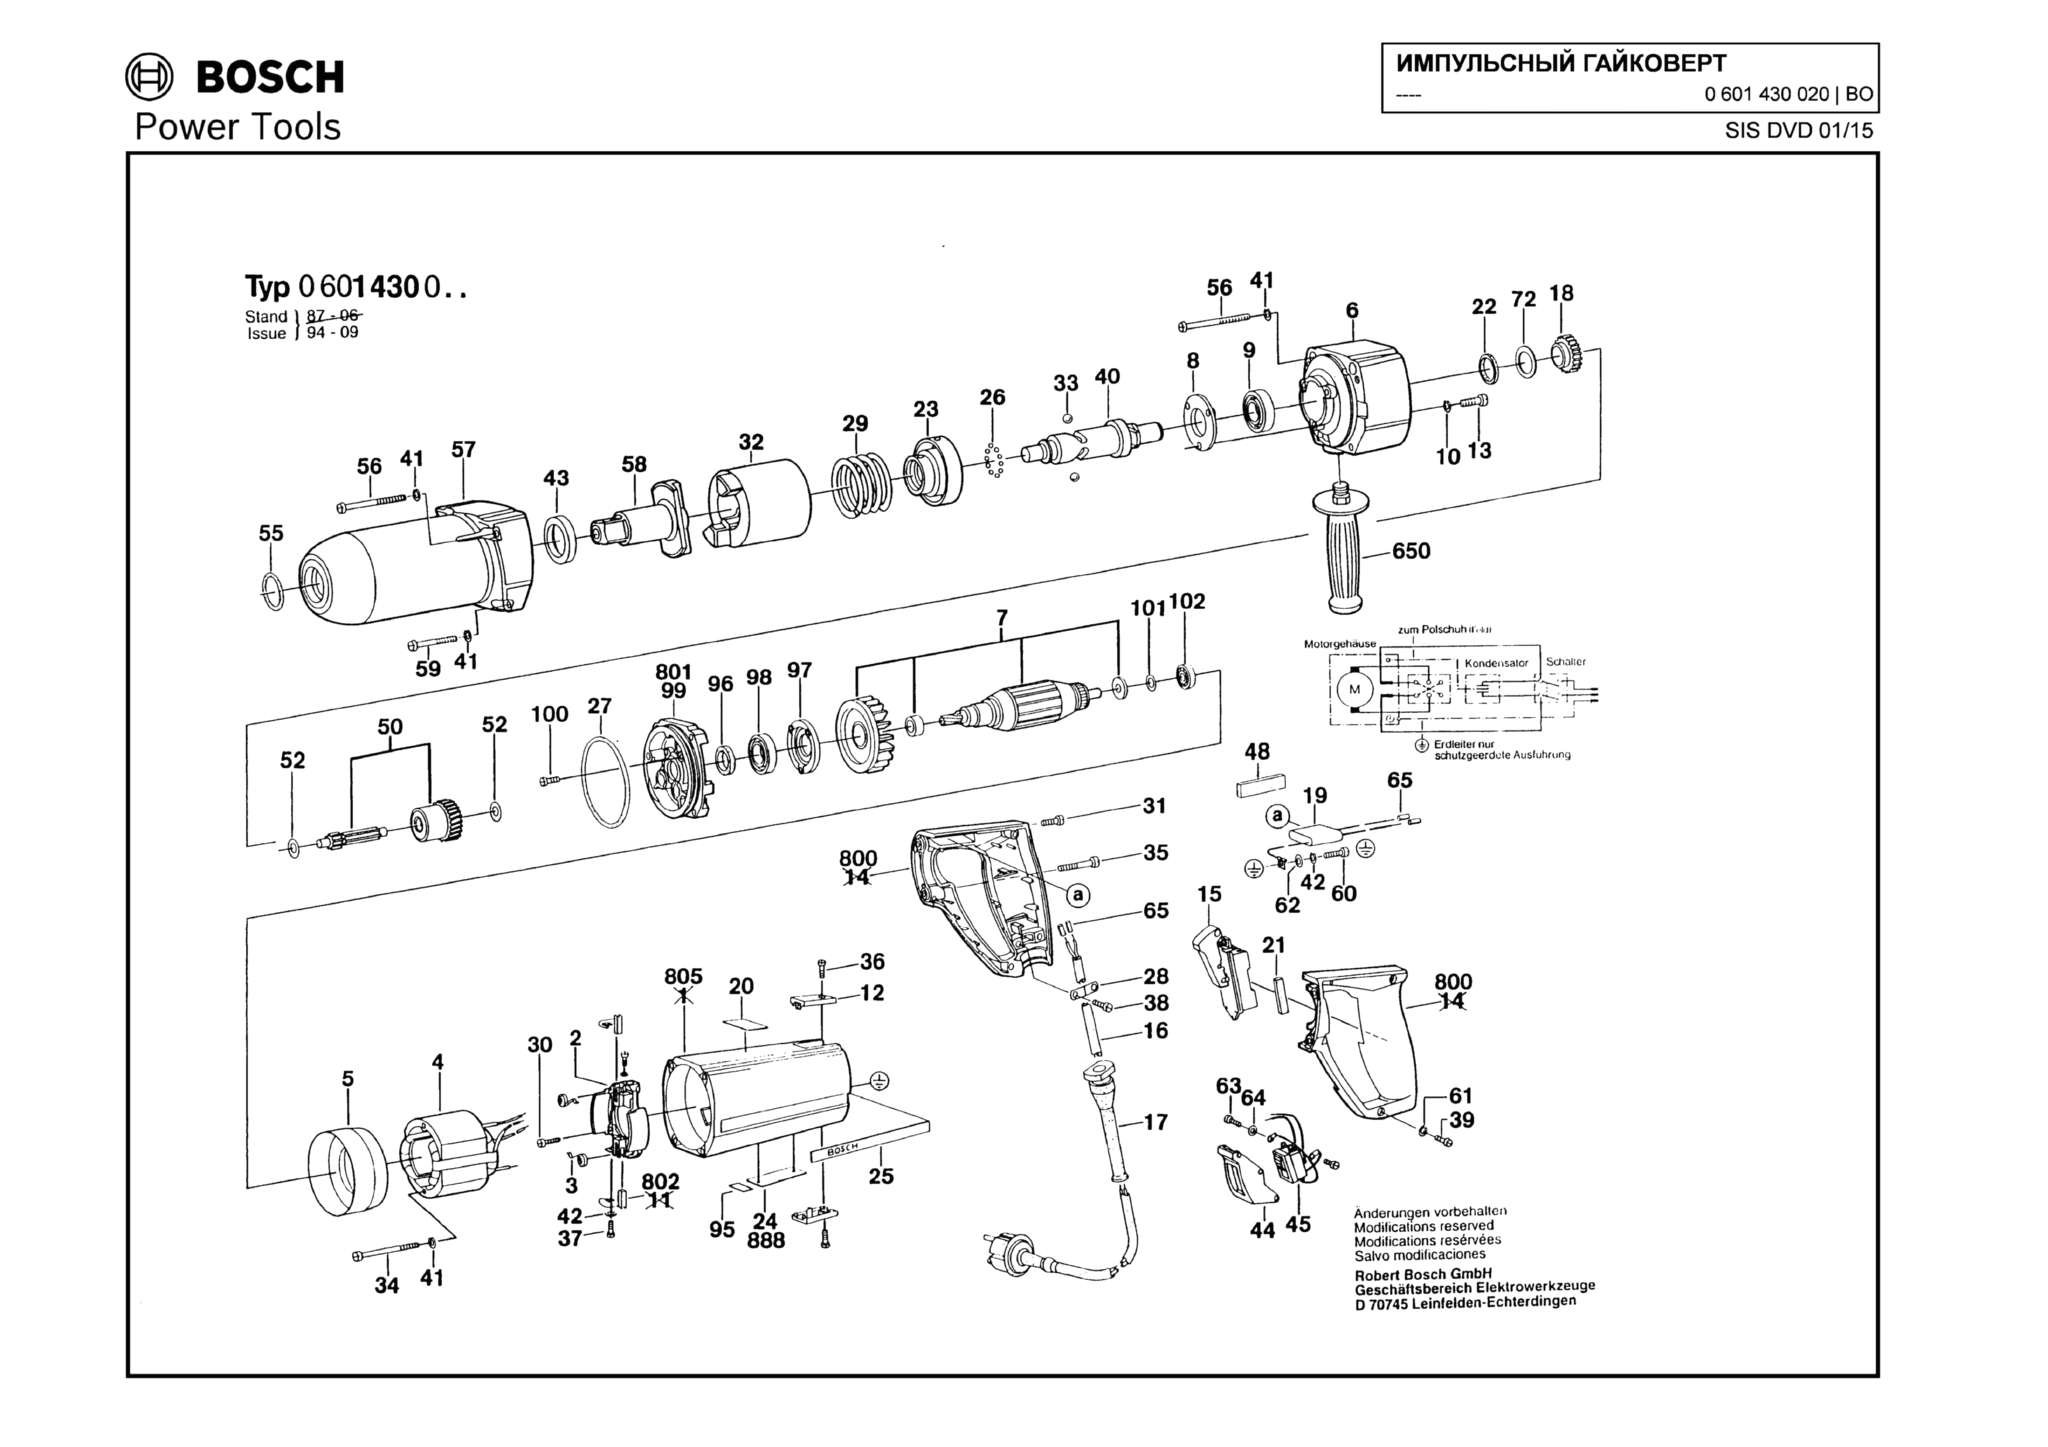 Запчасти, схема и деталировка Bosch (ТИП 0601430020)